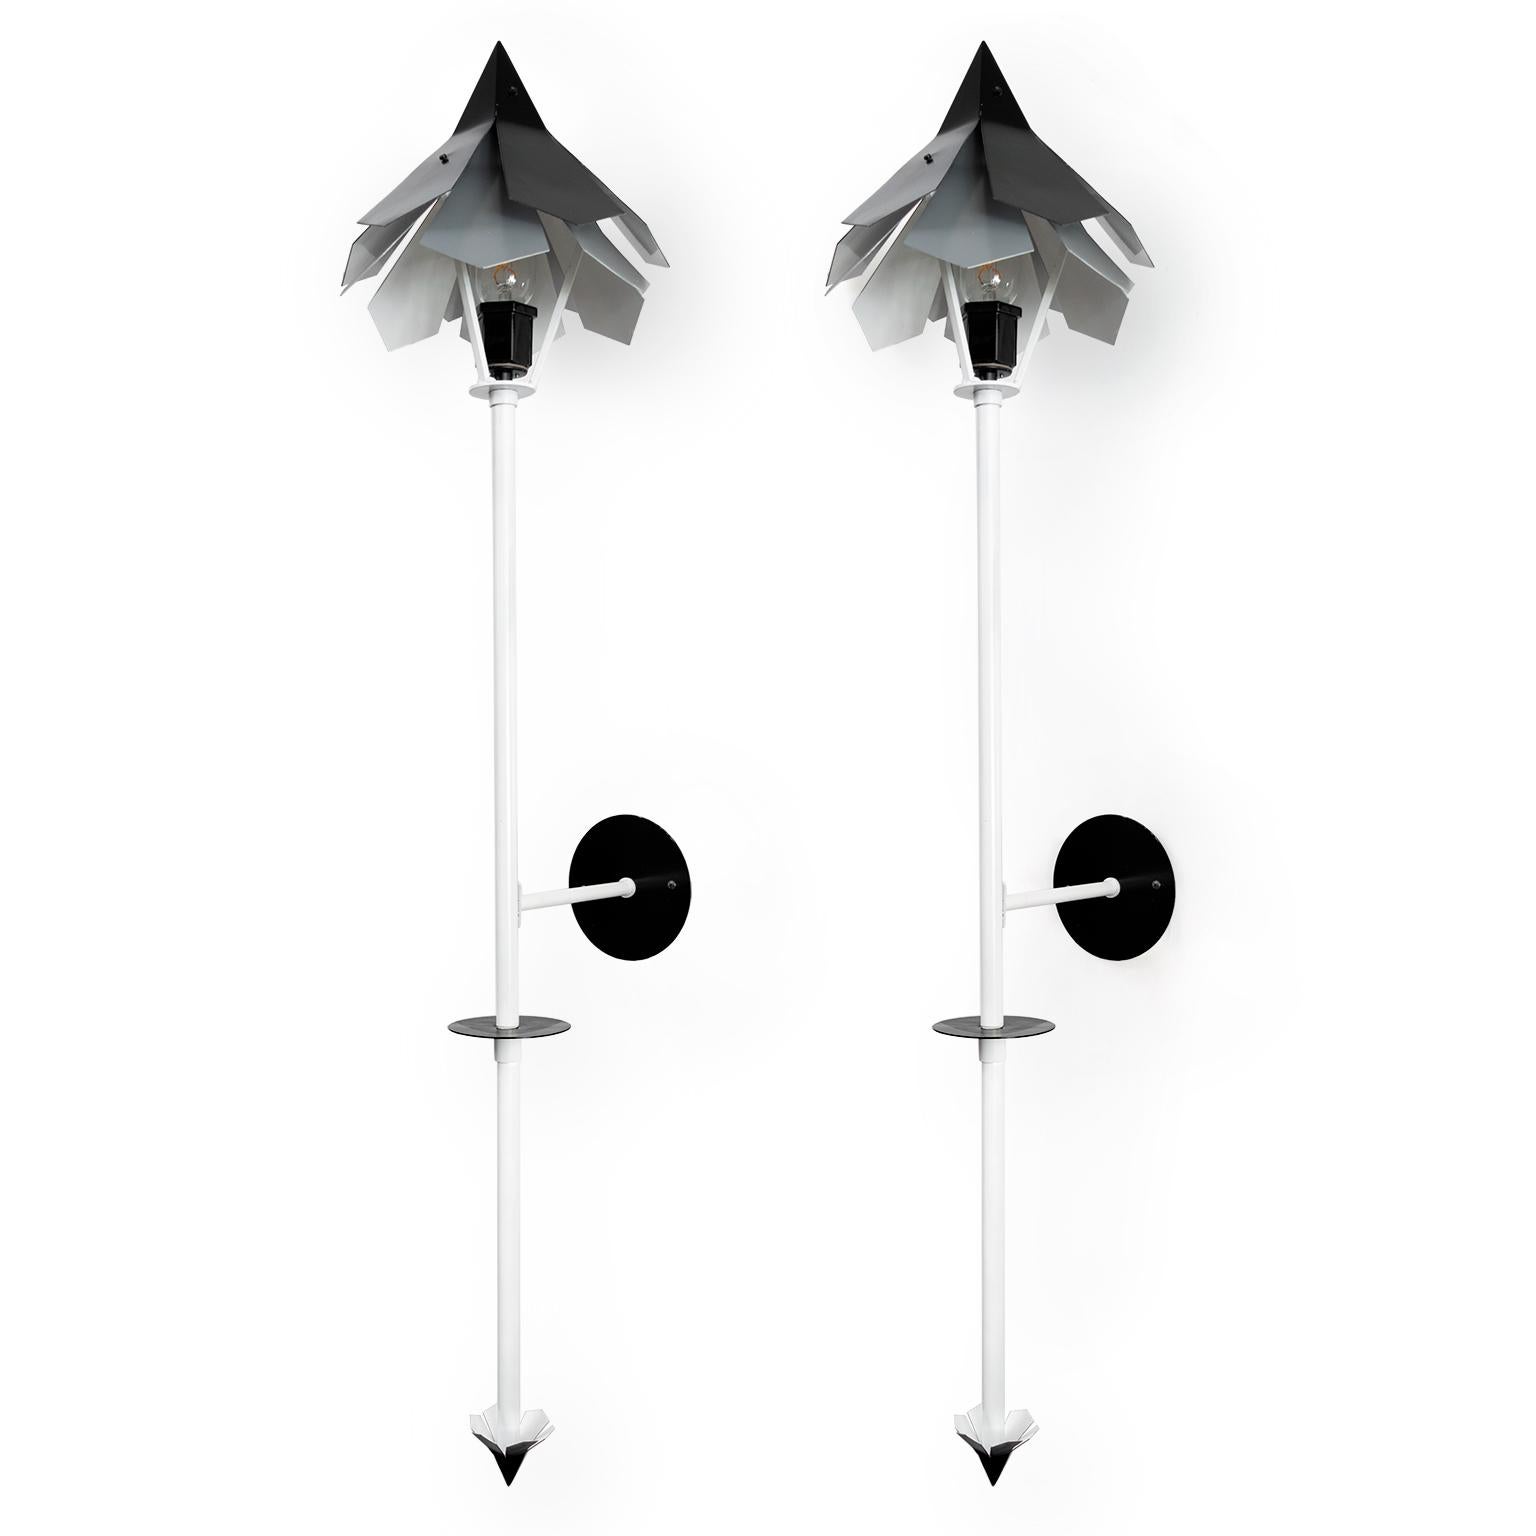 Une paire de lampes torches conçues par Simon Henningsen (fils de Poul) pour les Jardins de Tivoli (1962) à Copenhague, Danemark. Ces lampes ont été adaptées en lampes murales, nouvellement peintes et câblées pour être utilisées aux États-Unis avec